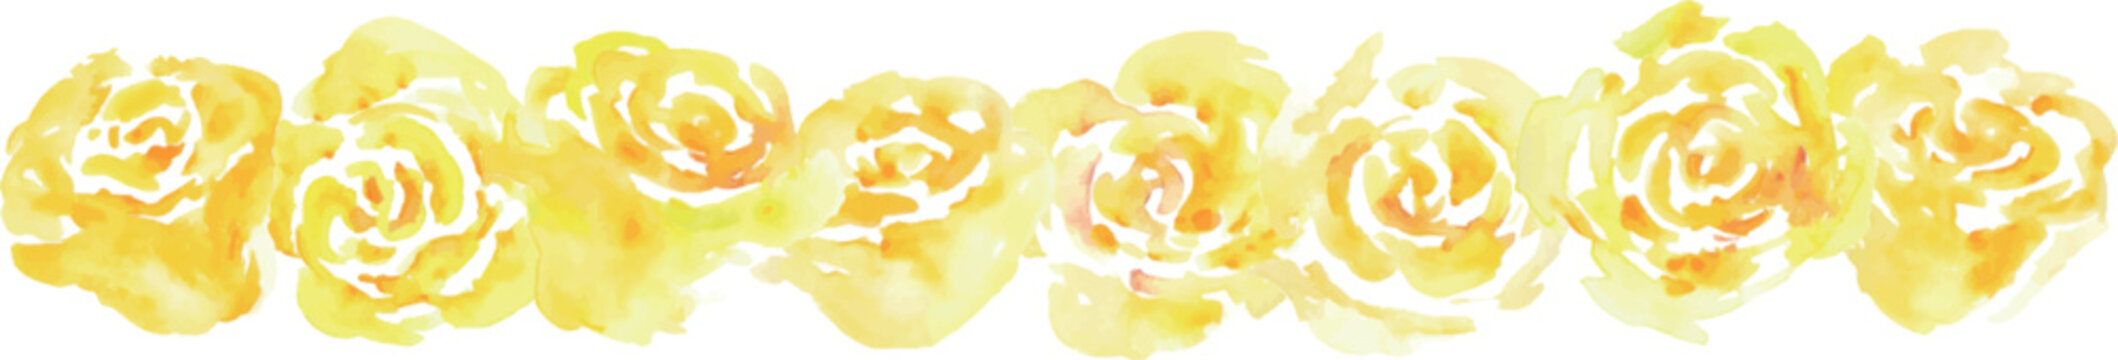 水彩画。水彩タッチの父の日薔薇ベクターイラスト。父の日の黄色い花。Watercolor. Father's Day rose vector illustration with watercolor touch. Father's day yellow flowers.